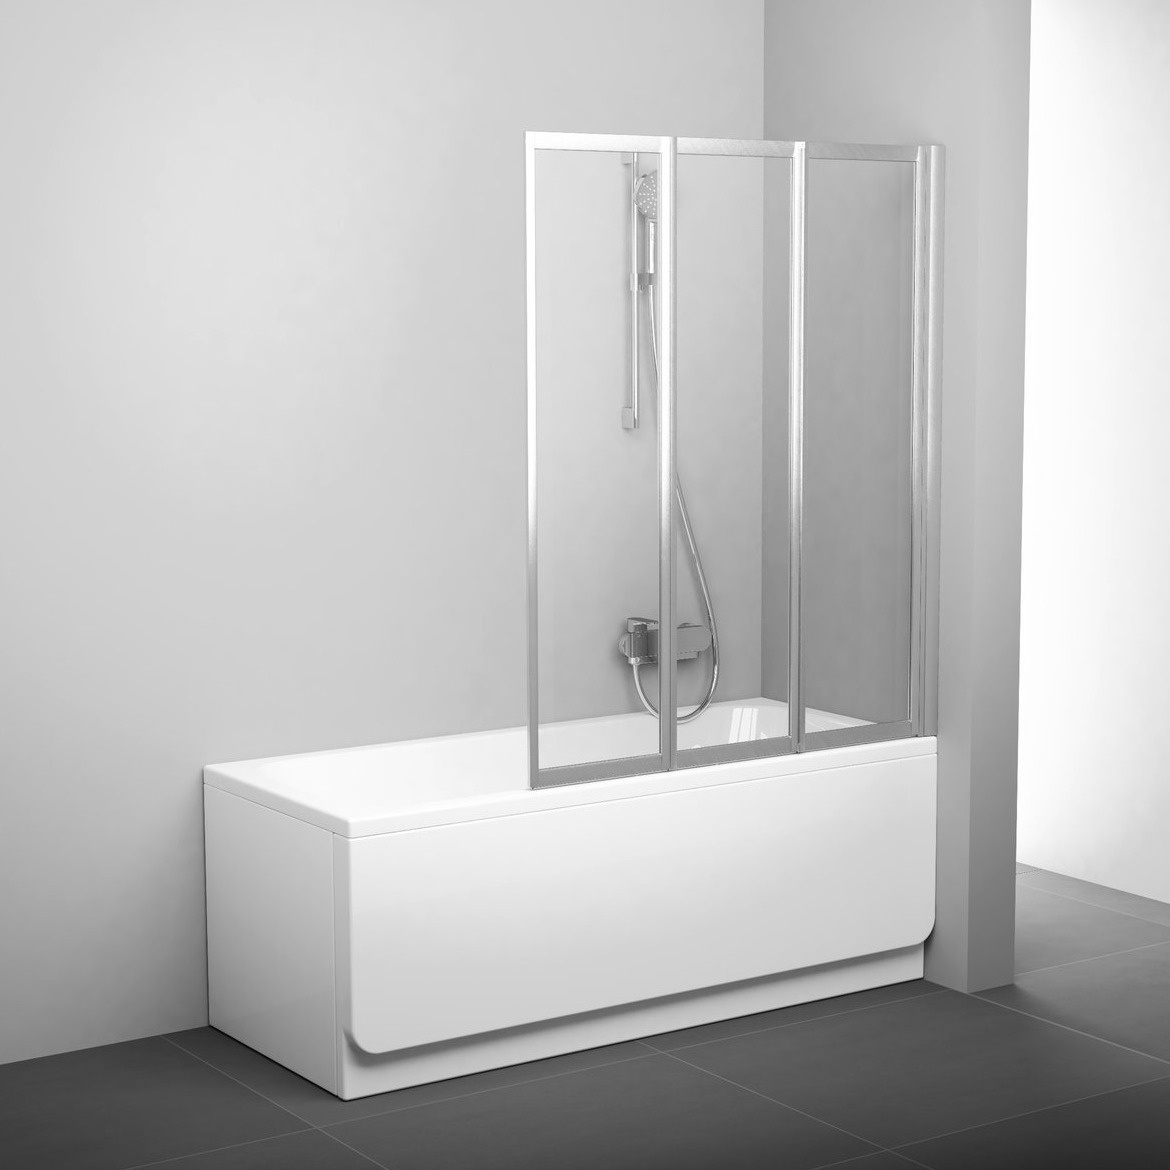 Шторка стеклянная для ванны универсальная трехсекционная складная 140x115см RAVAK BEHAPPY II VS3 115 стекло прозрачное 3мм профиль сатин 795S0U00Z1